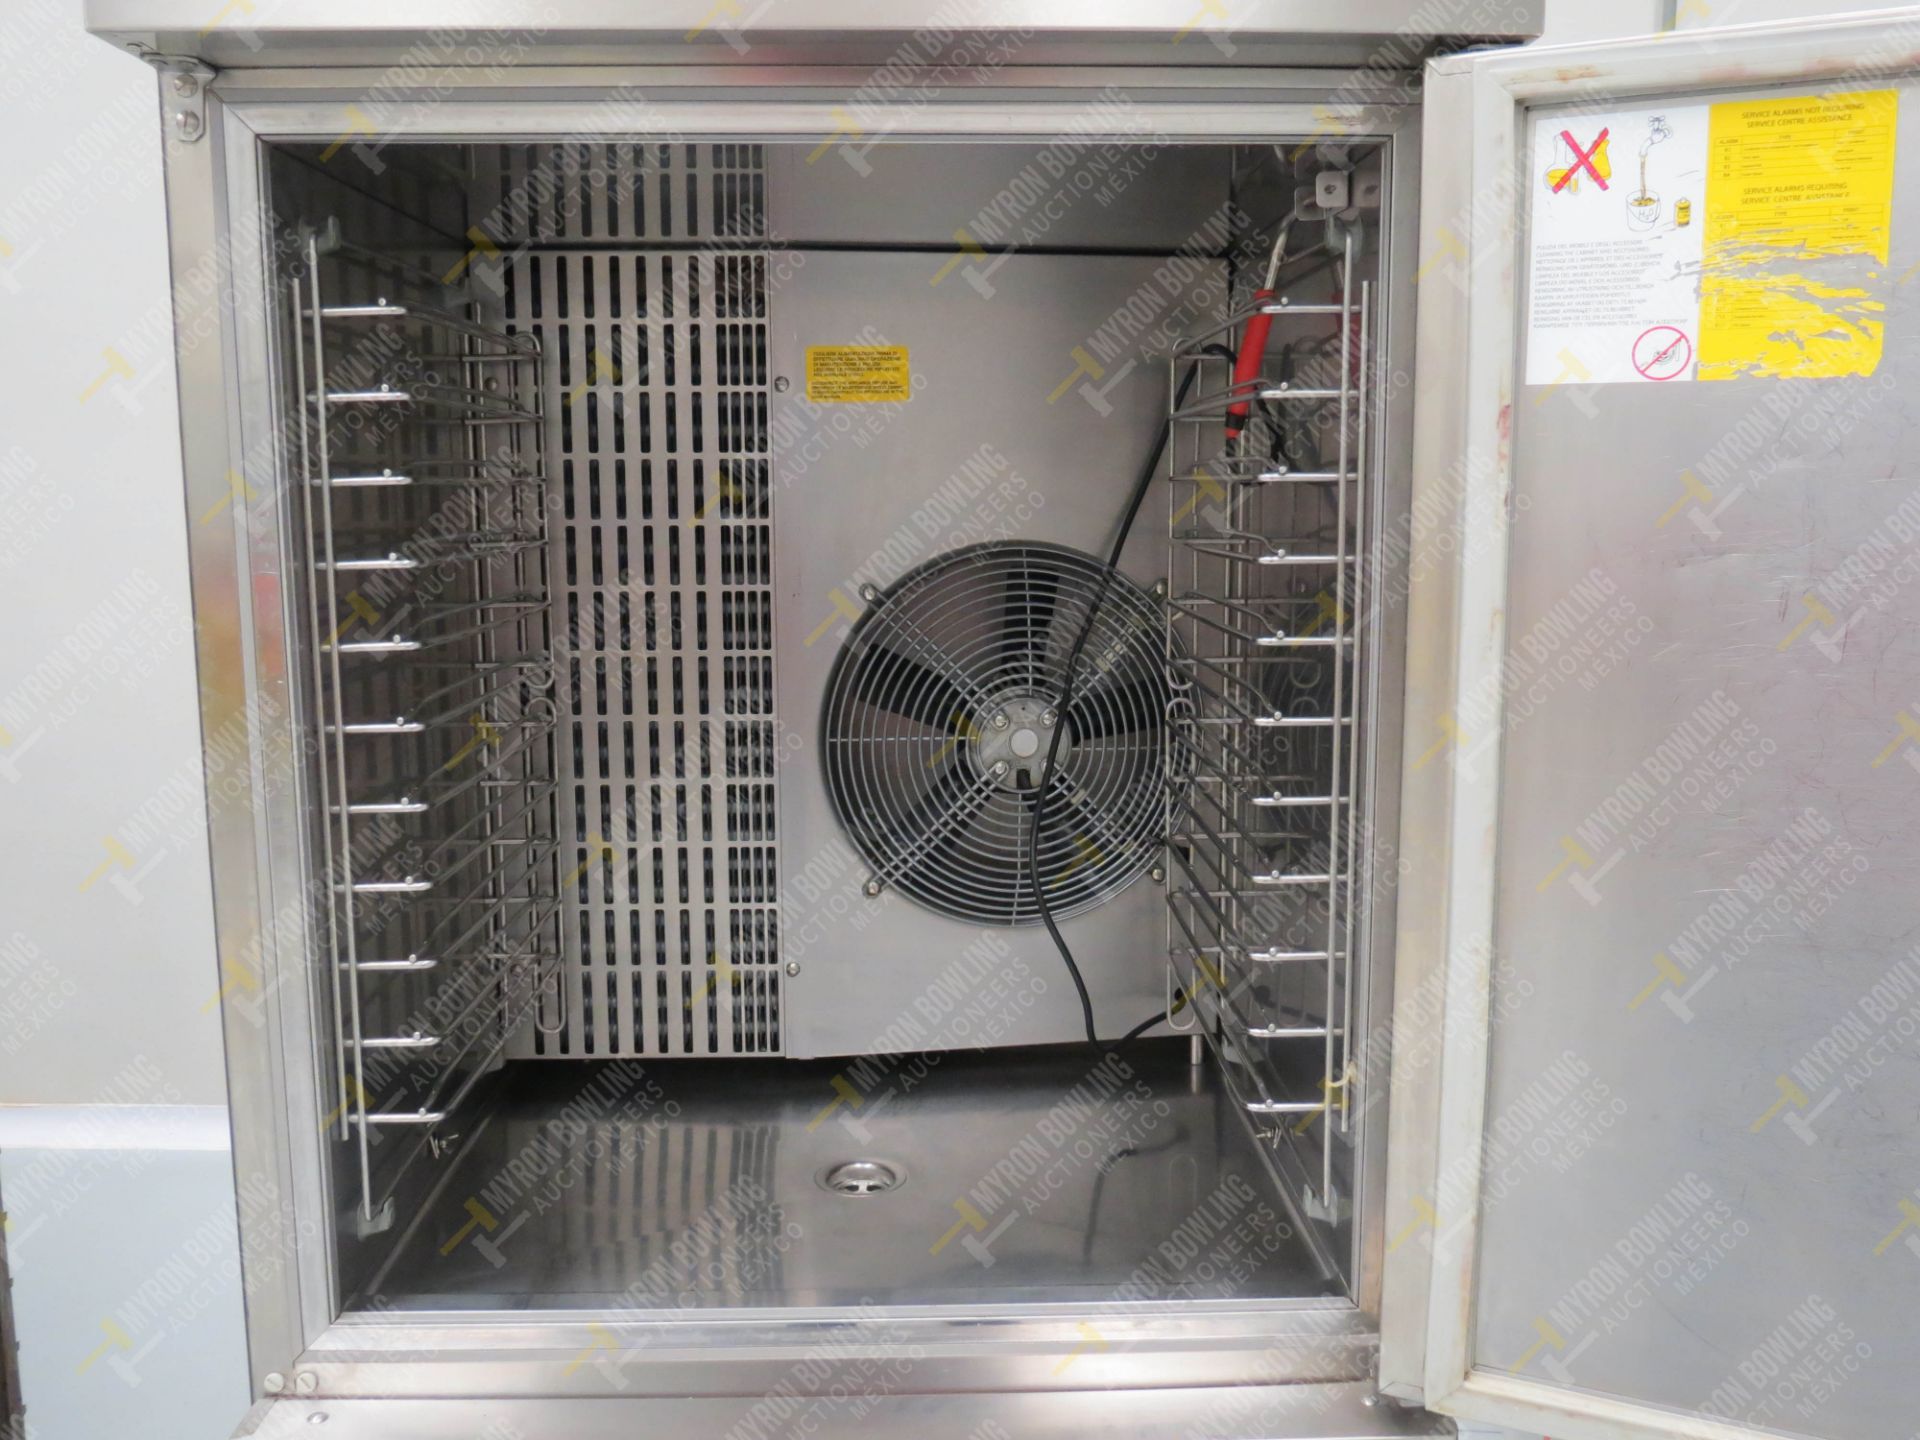 Abatidor de temperatura marca Electrolux - Image 4 of 5